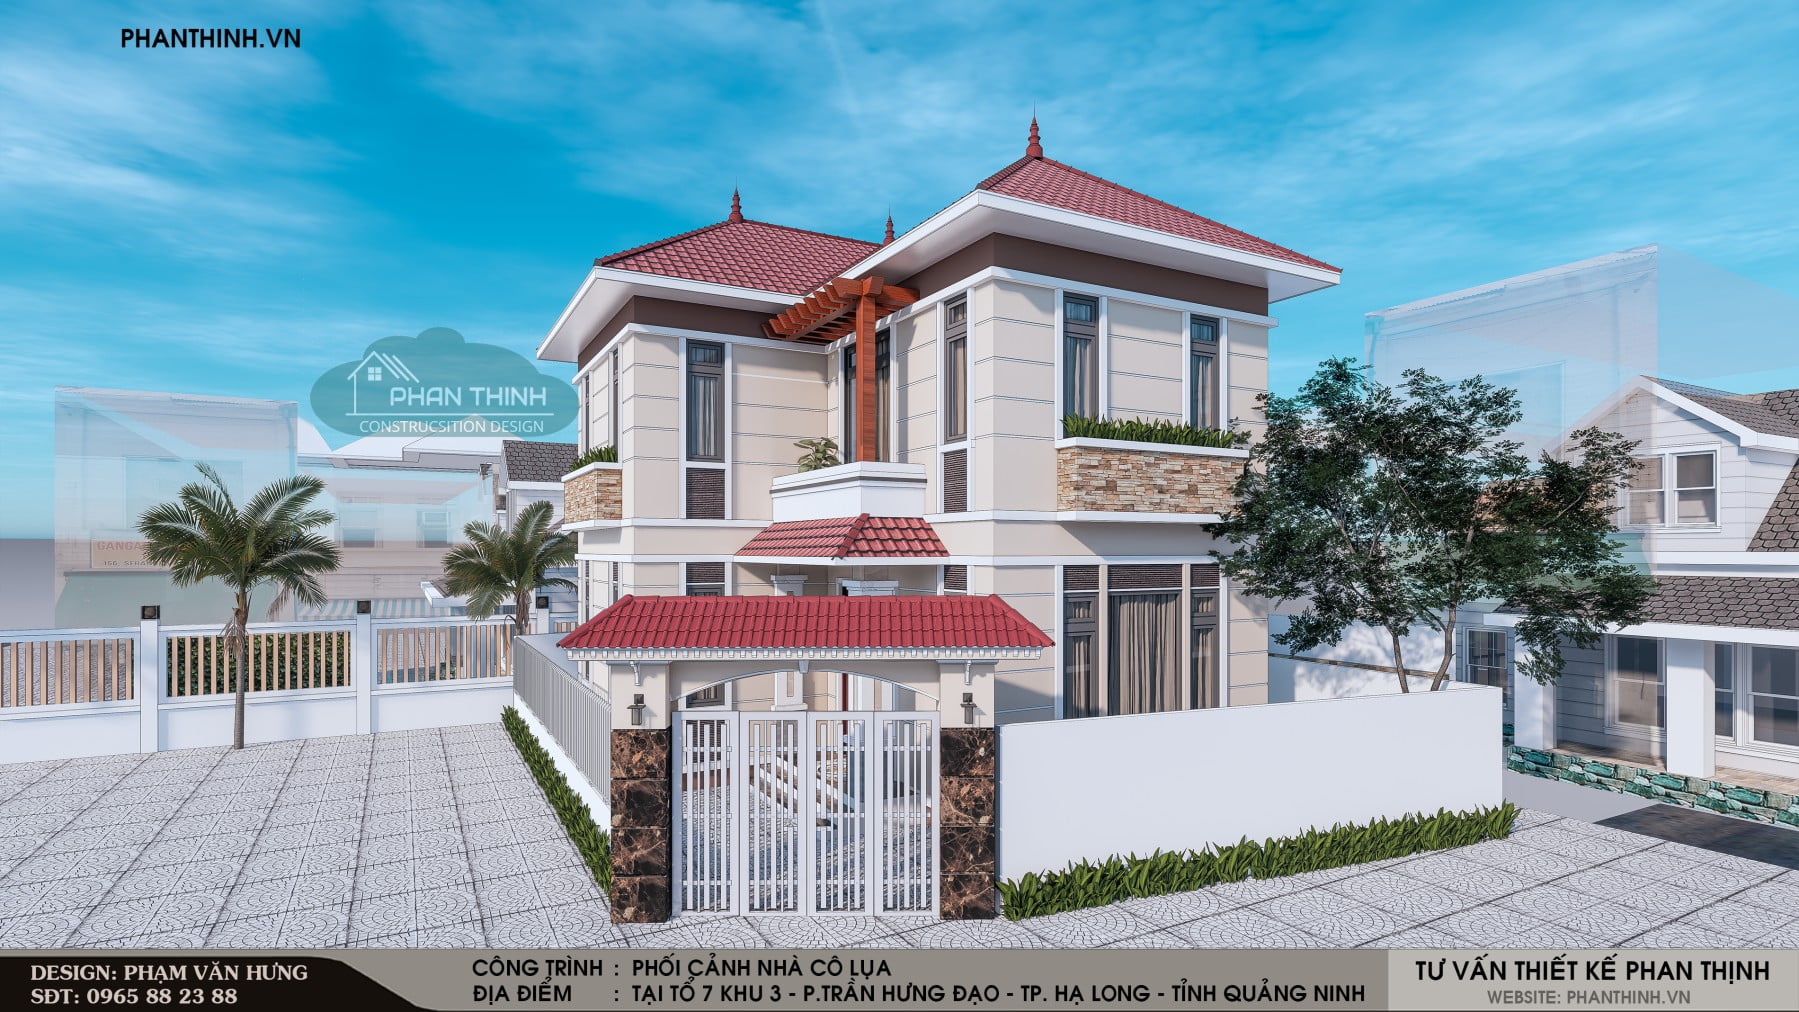 Phương án phối cảnh thiết kế xây dựng nhà mái thái 2 tầng tại Quảng Ninh